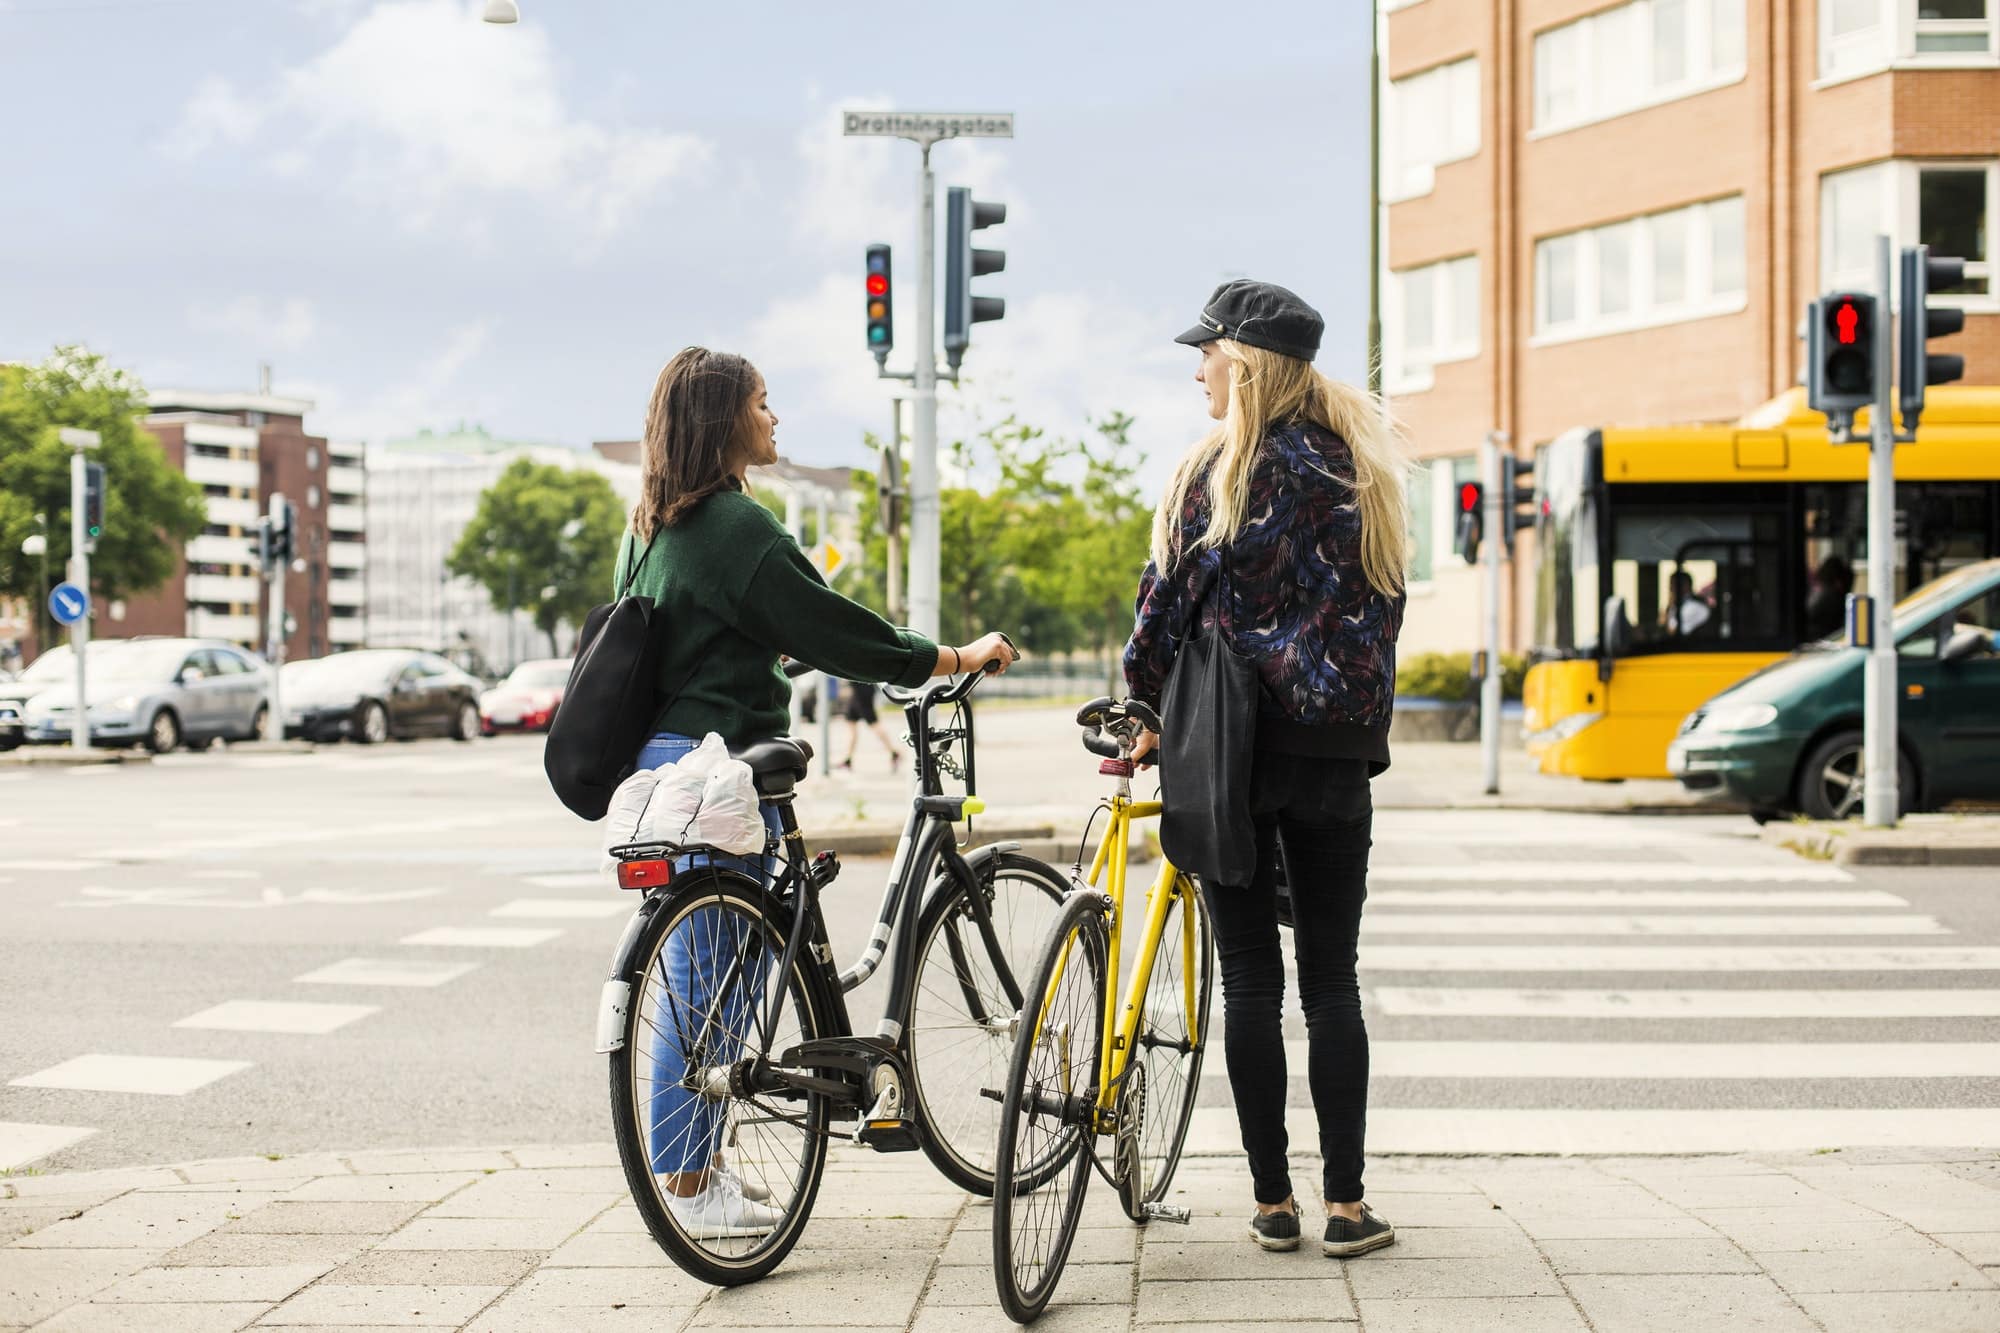 Two young women pushing bikes in town